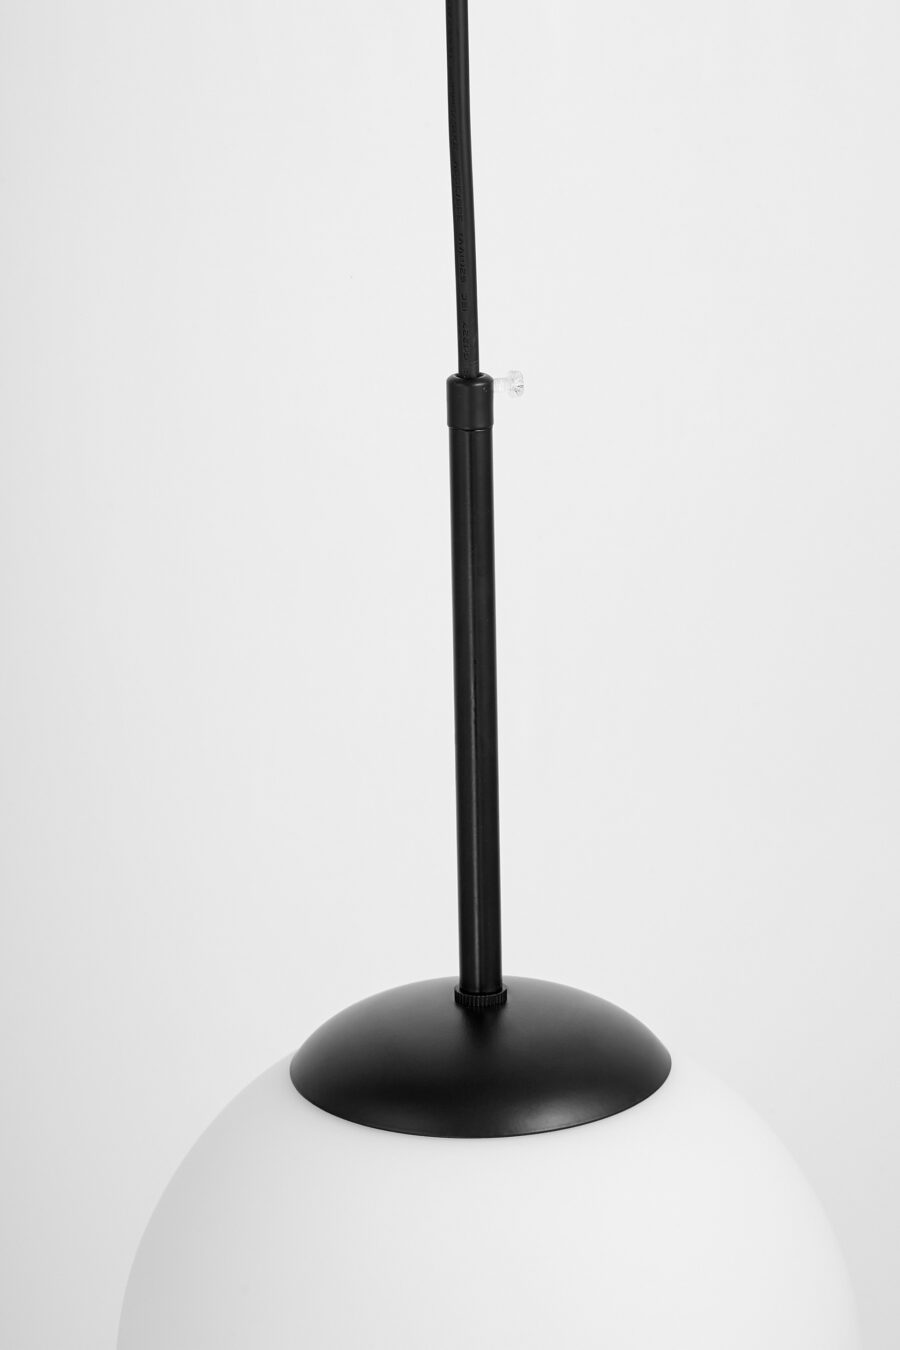 lampade moderne a sospensione sferiche fredica d 20